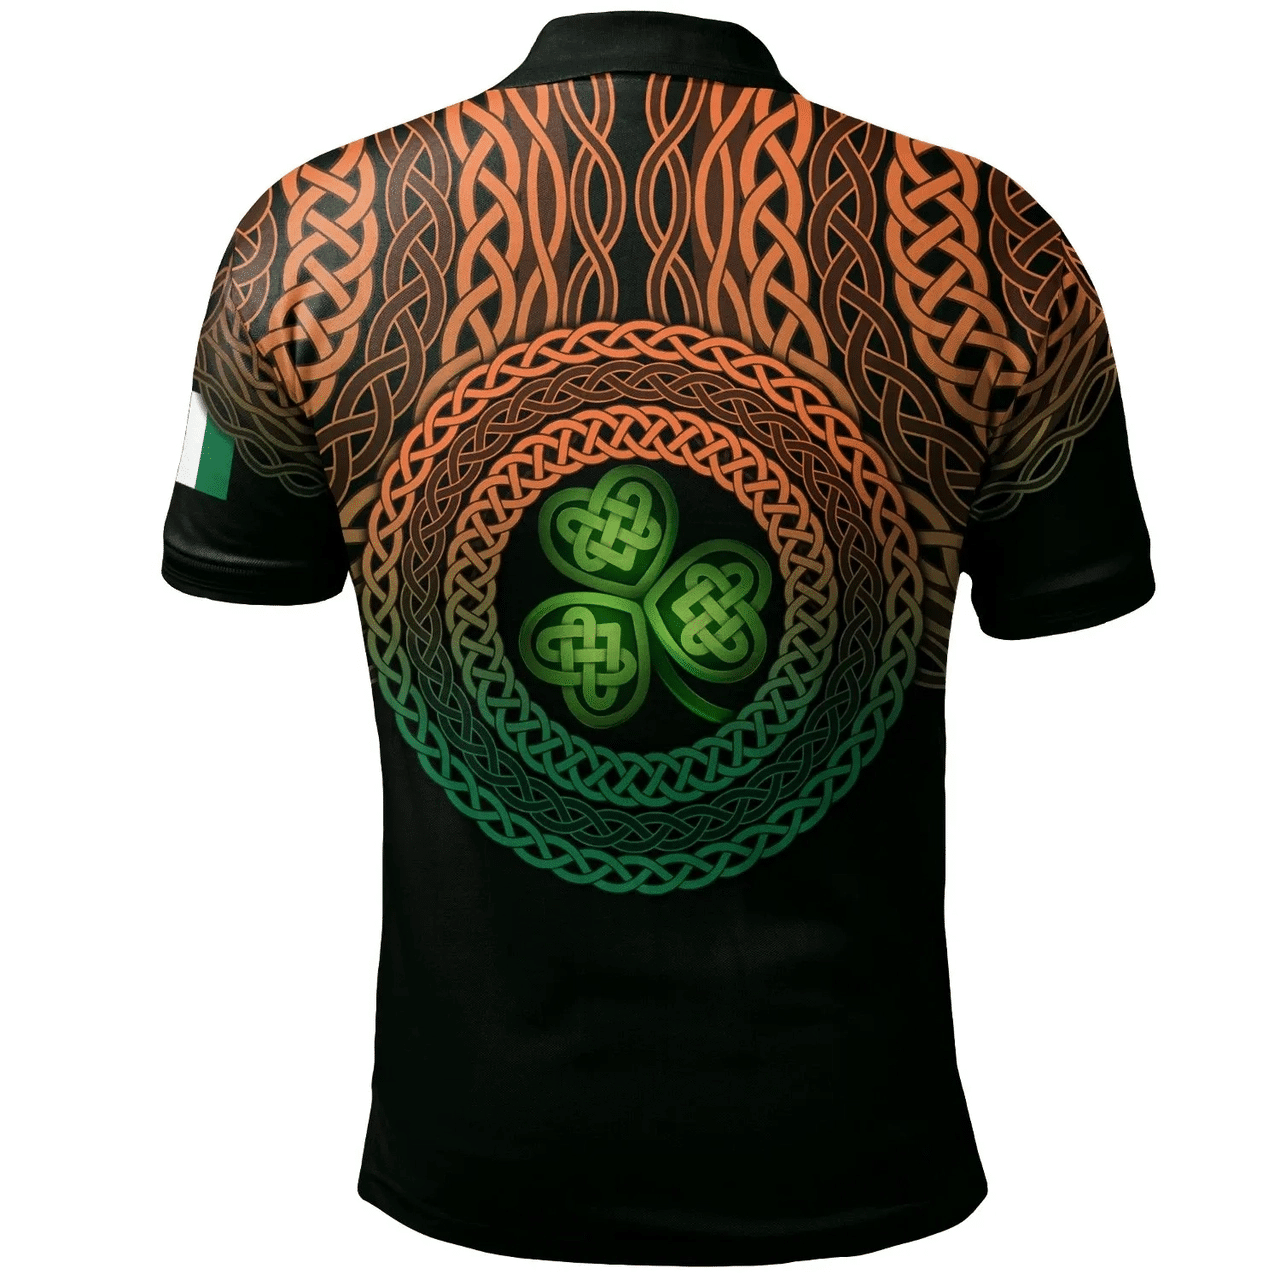 1stIreland Ireland Polo Shirt - Greer Irish Family Crest Polo Shirt - Celtic Pride A7 | 1stIreland.com